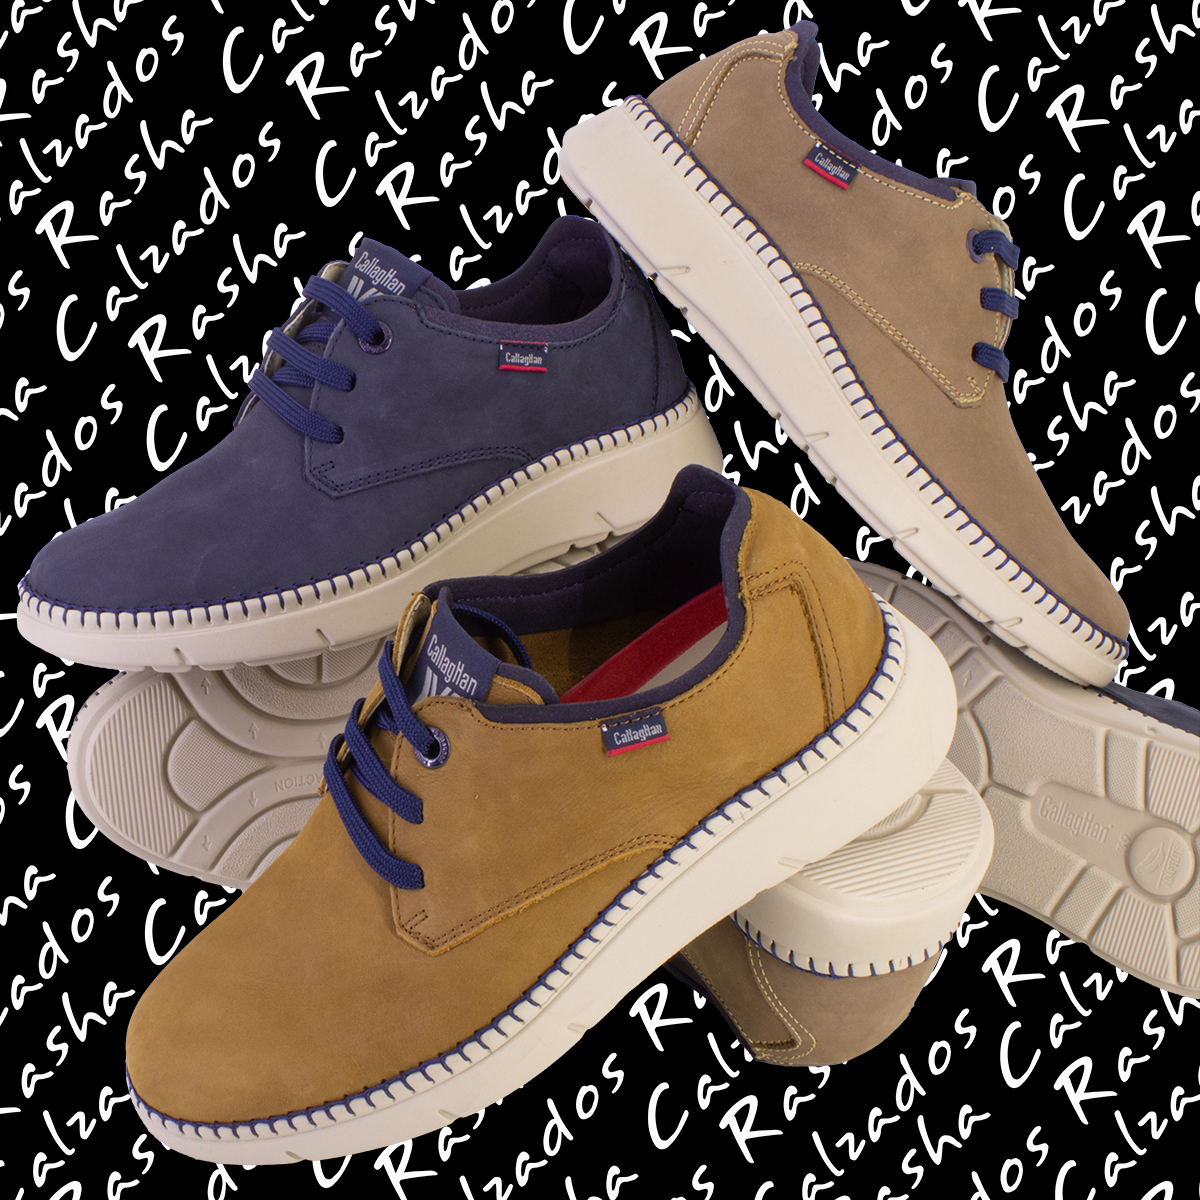 Tres colores y la máxima comodidad en un #blucher para caballero muy ligero.

💻#TiendaOnline :
CalzadosRasha.com

#CalzadosRasha #RashaShoes #Rasha #HechosEnEspaña #MadeInSpain #ShoesSpain #RashaZapaterias #CalzadoEspañol #Callaghan